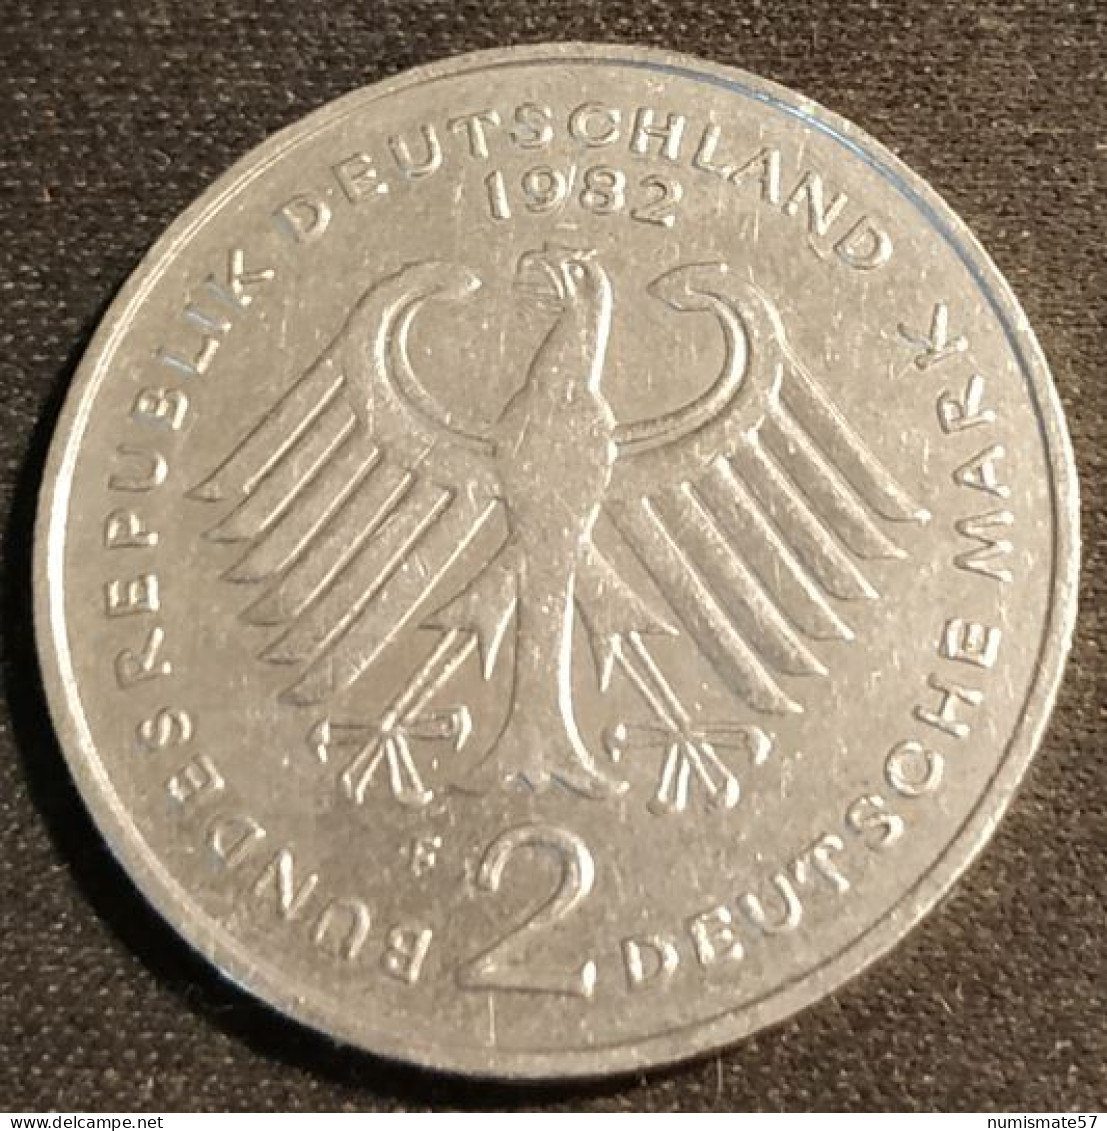 ALLEMAGNE - GERMANY - 2 DEUTSCHE MARK 1982 F - Konrad Adenauer - KM 124 - 2 Marchi